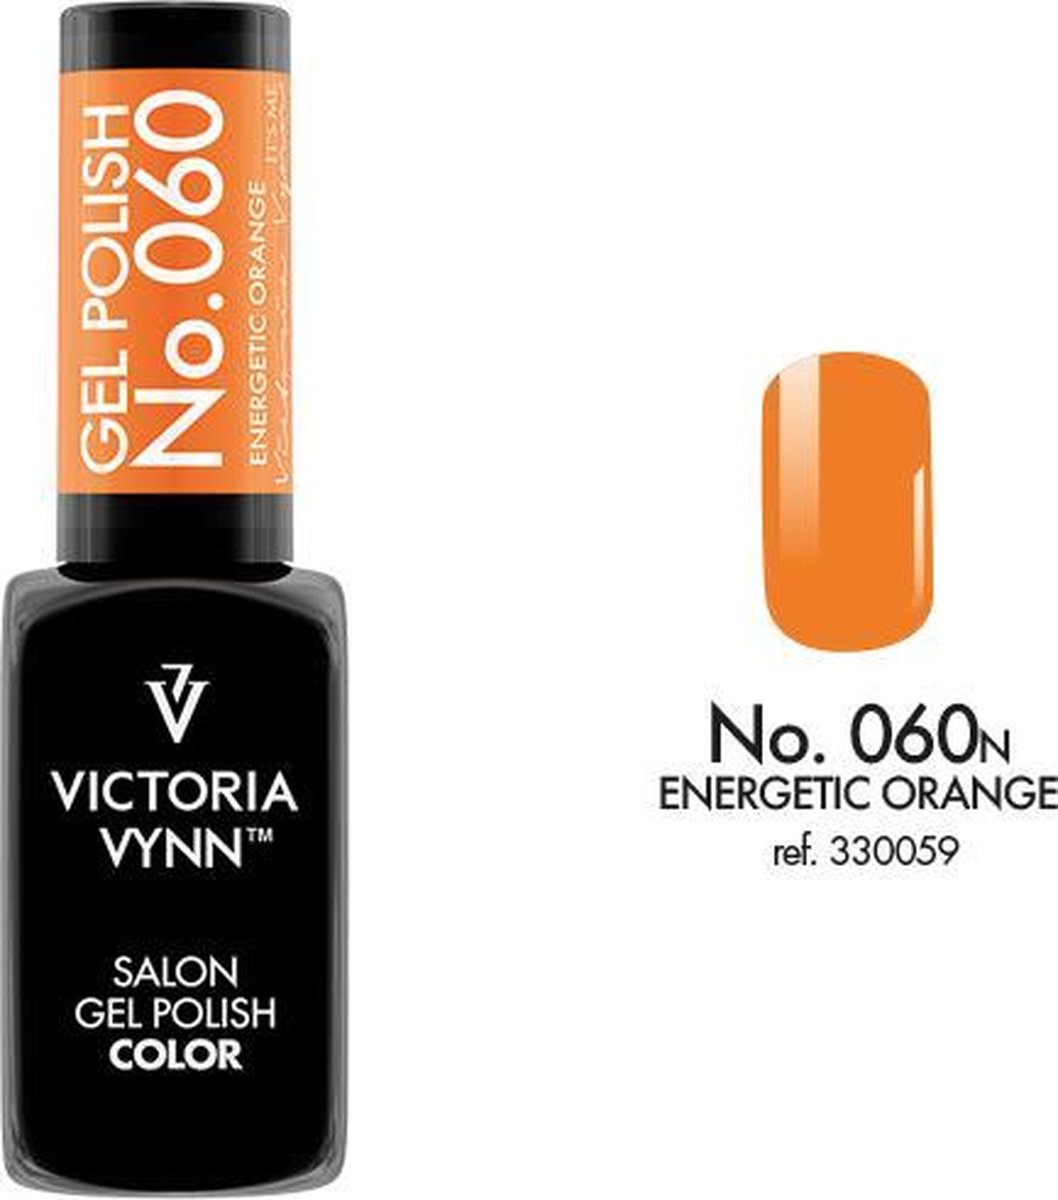 Gellak Victoria Vynn™ Gel Nagellak - Salon Gel Polish Color 060 - 8 ml. - Energetic Orange